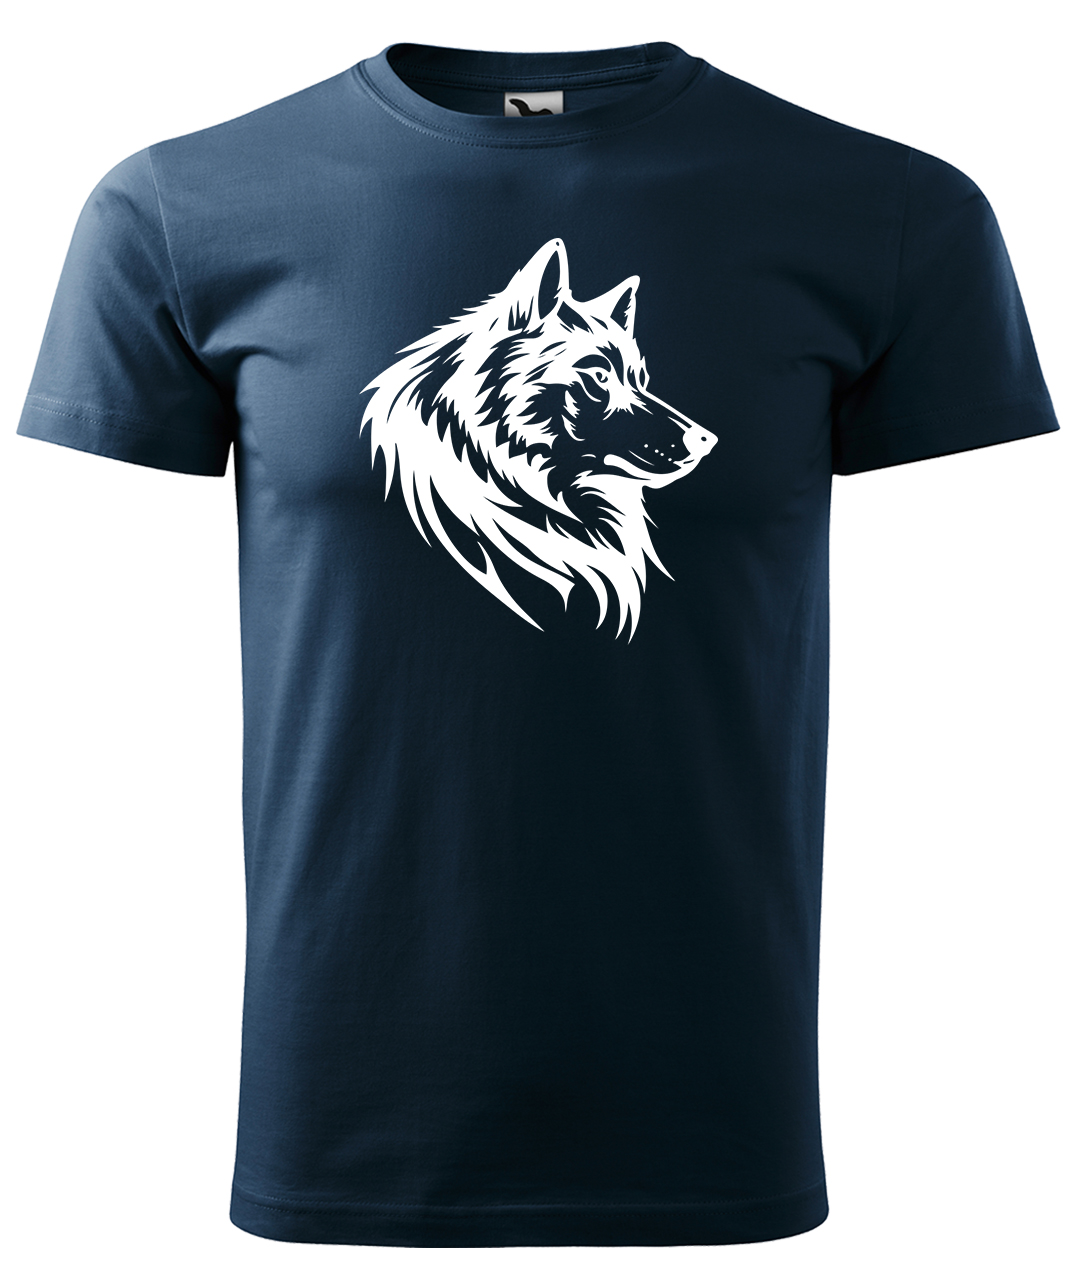 Dětské tričko s vlkem - Wolf Velikost: 4 roky / 110 cm, Barva: Námořní modrá (02), Délka rukávu: Krátký rukáv